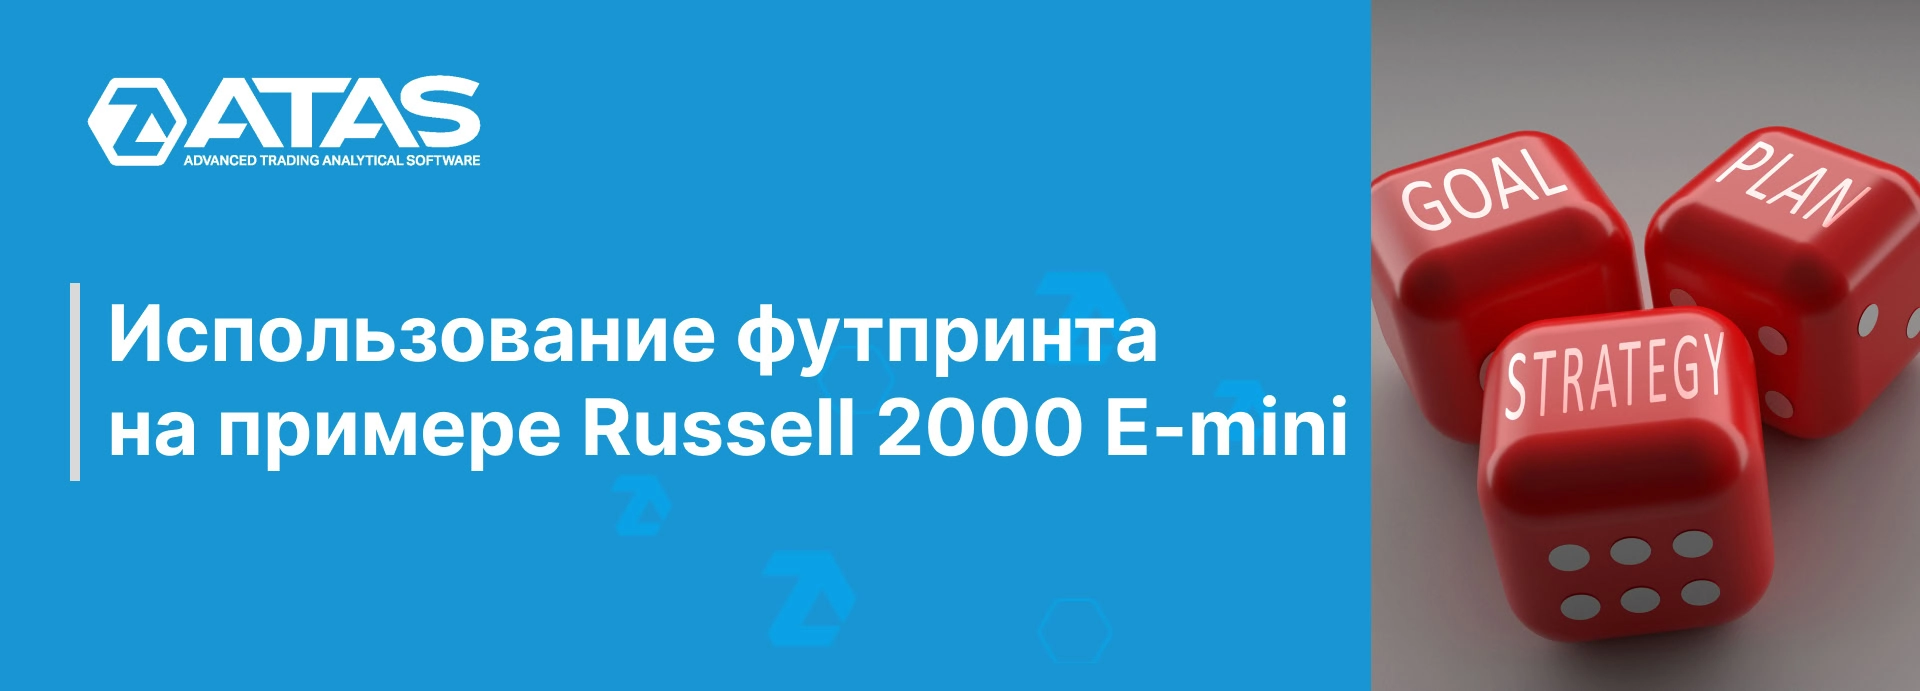 Использование футпринта на примере Russell 2000 E-mini